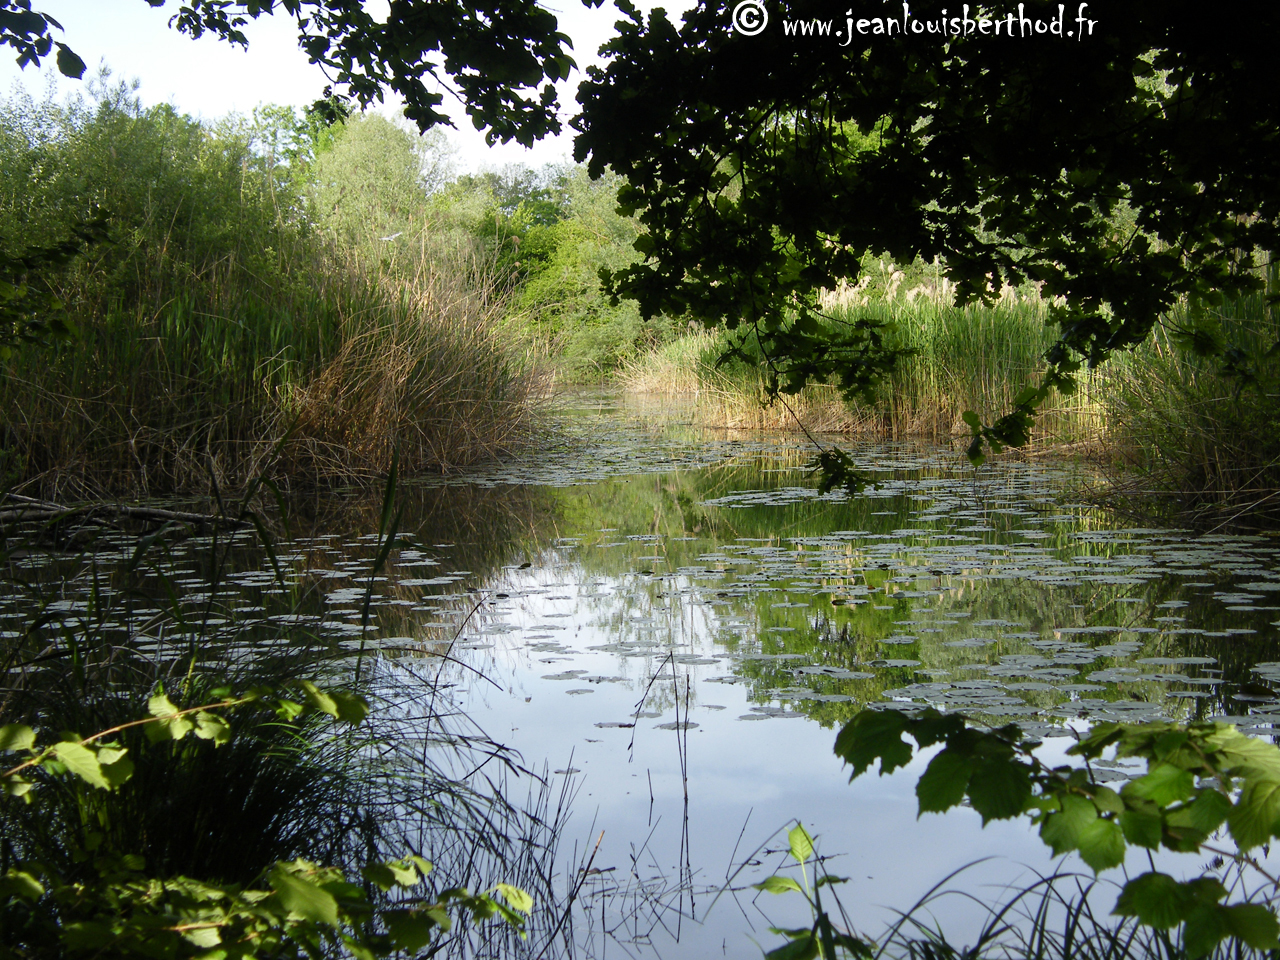 The Pond of Crosagny7